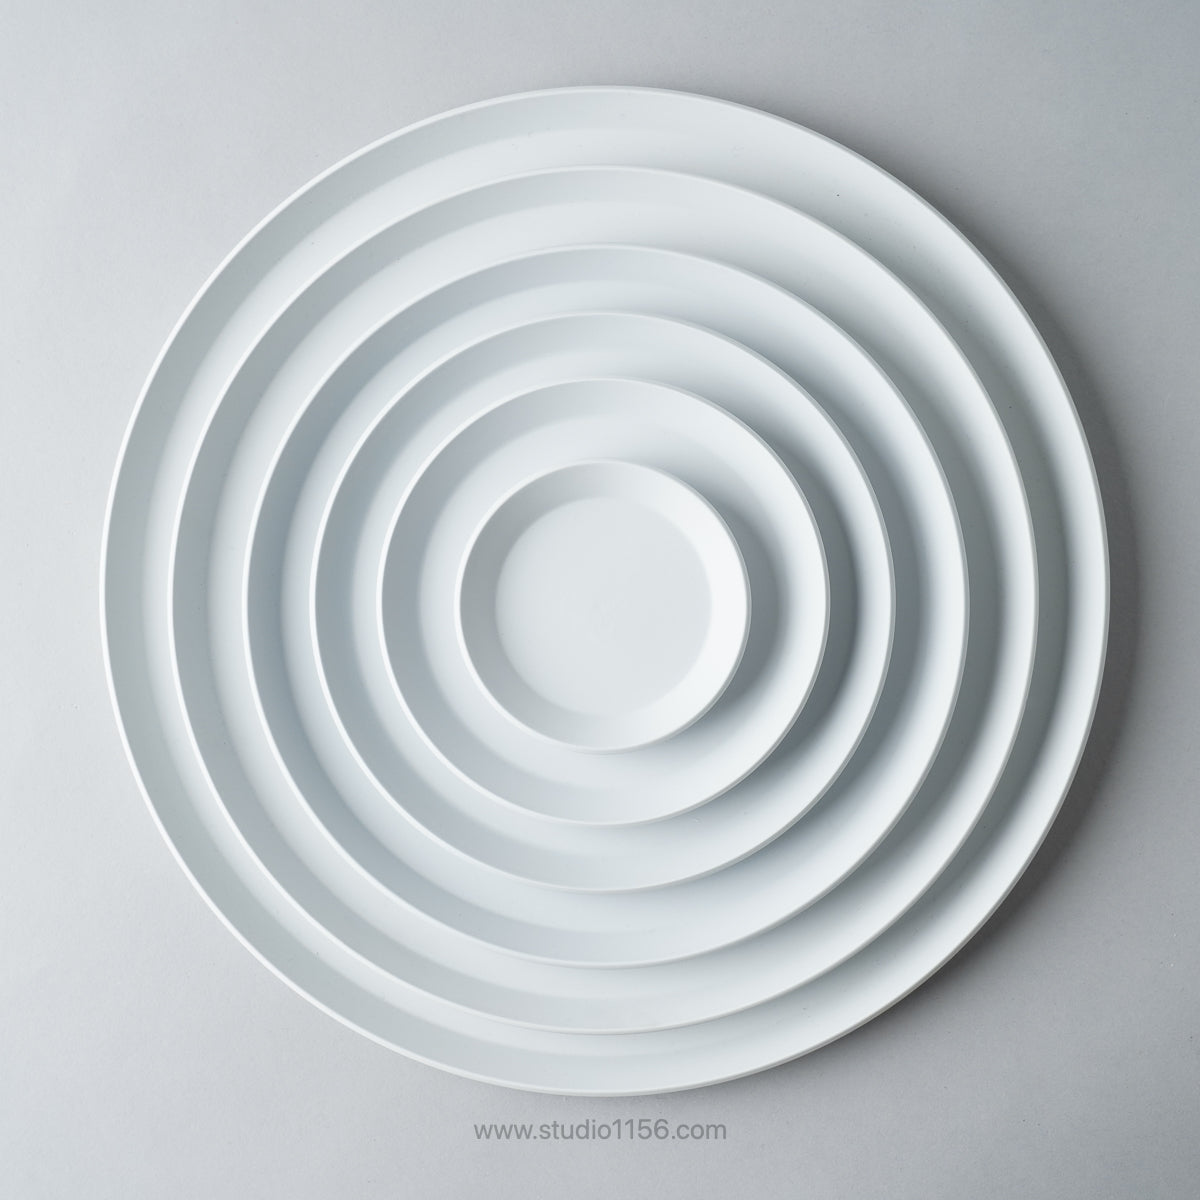 有田焼 ラウンドプレート グレー / TY Round Plate Plain Gray 1616 / Arita Japan Studio1156